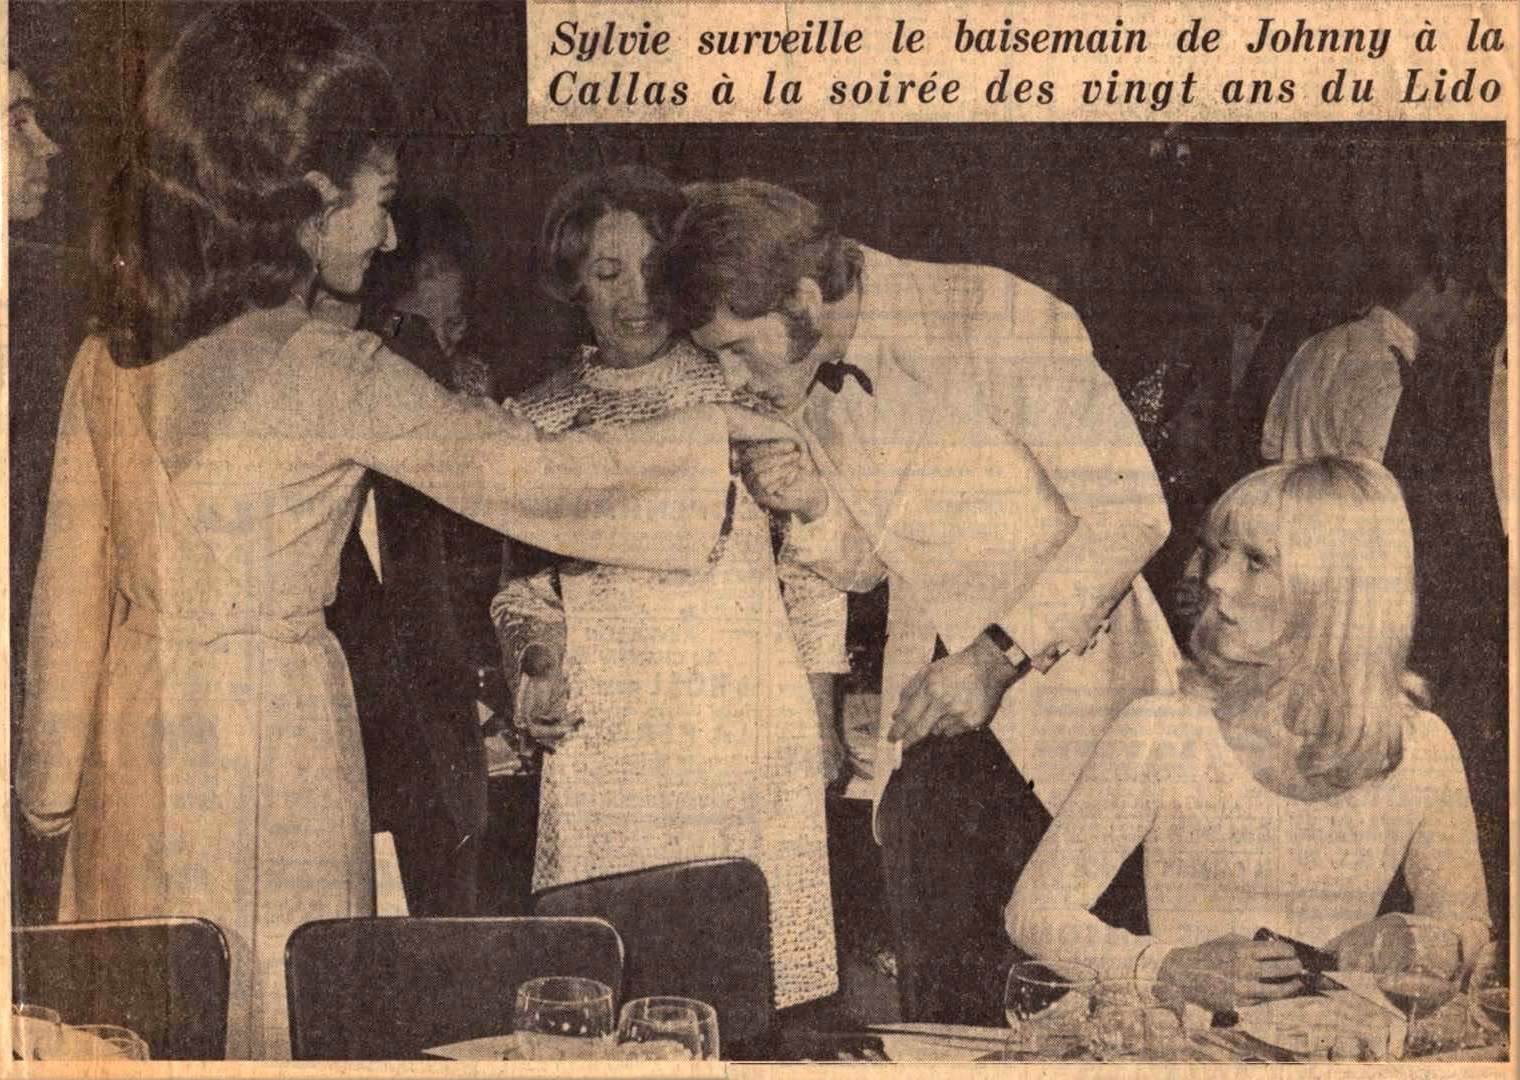 article France-Soir avec Maria Callas, Sylvie Vartan et Johnny Hallyday pour les 20 ans du Lido en 1966